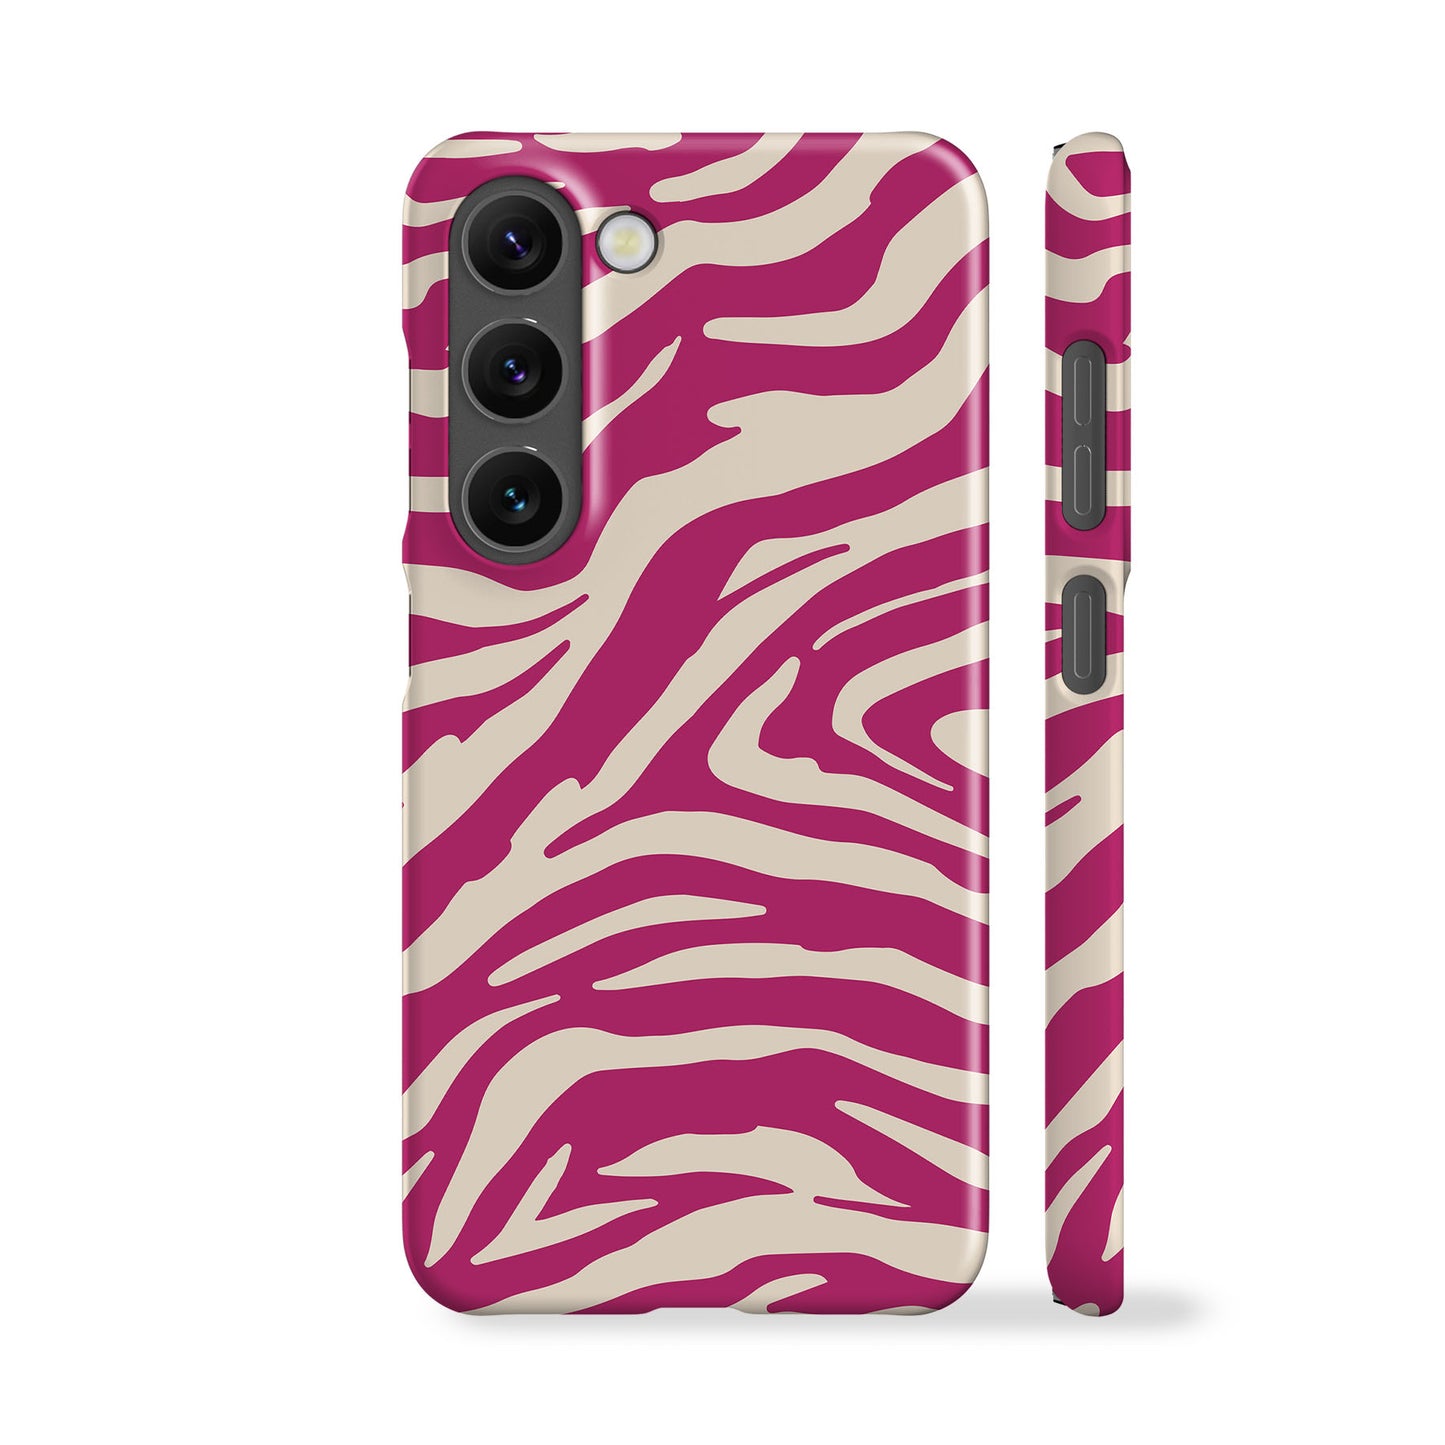 Hot Pink Zebra Phone Case